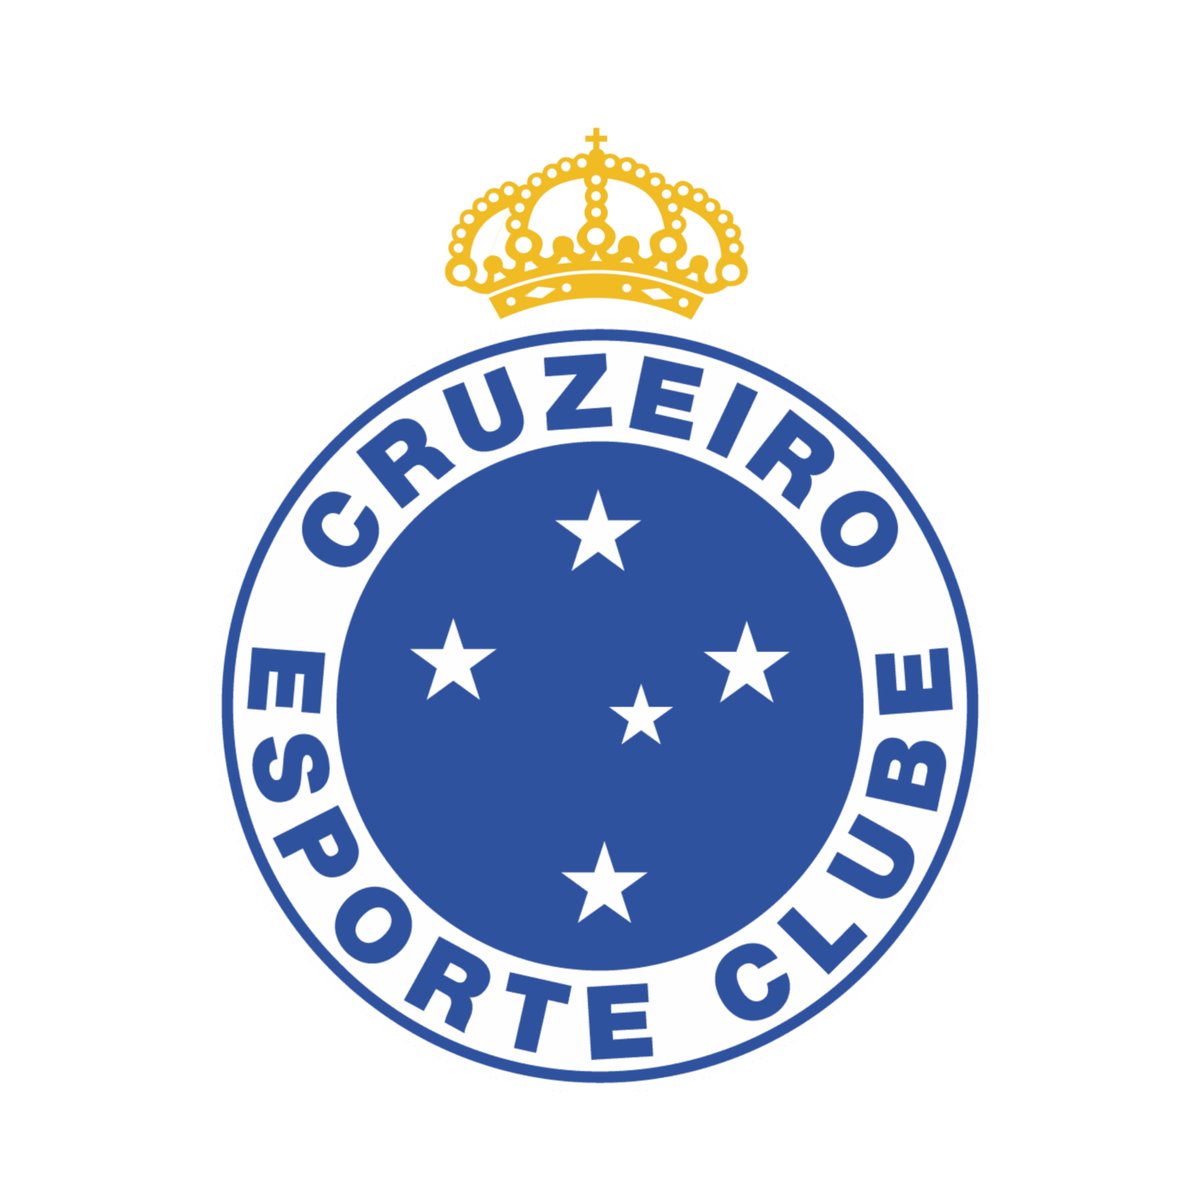 📌 - Escudo do Cruzeiro

🚫 Sem coroa
👑 Com coroa

➡️ Qual a sua preferência?